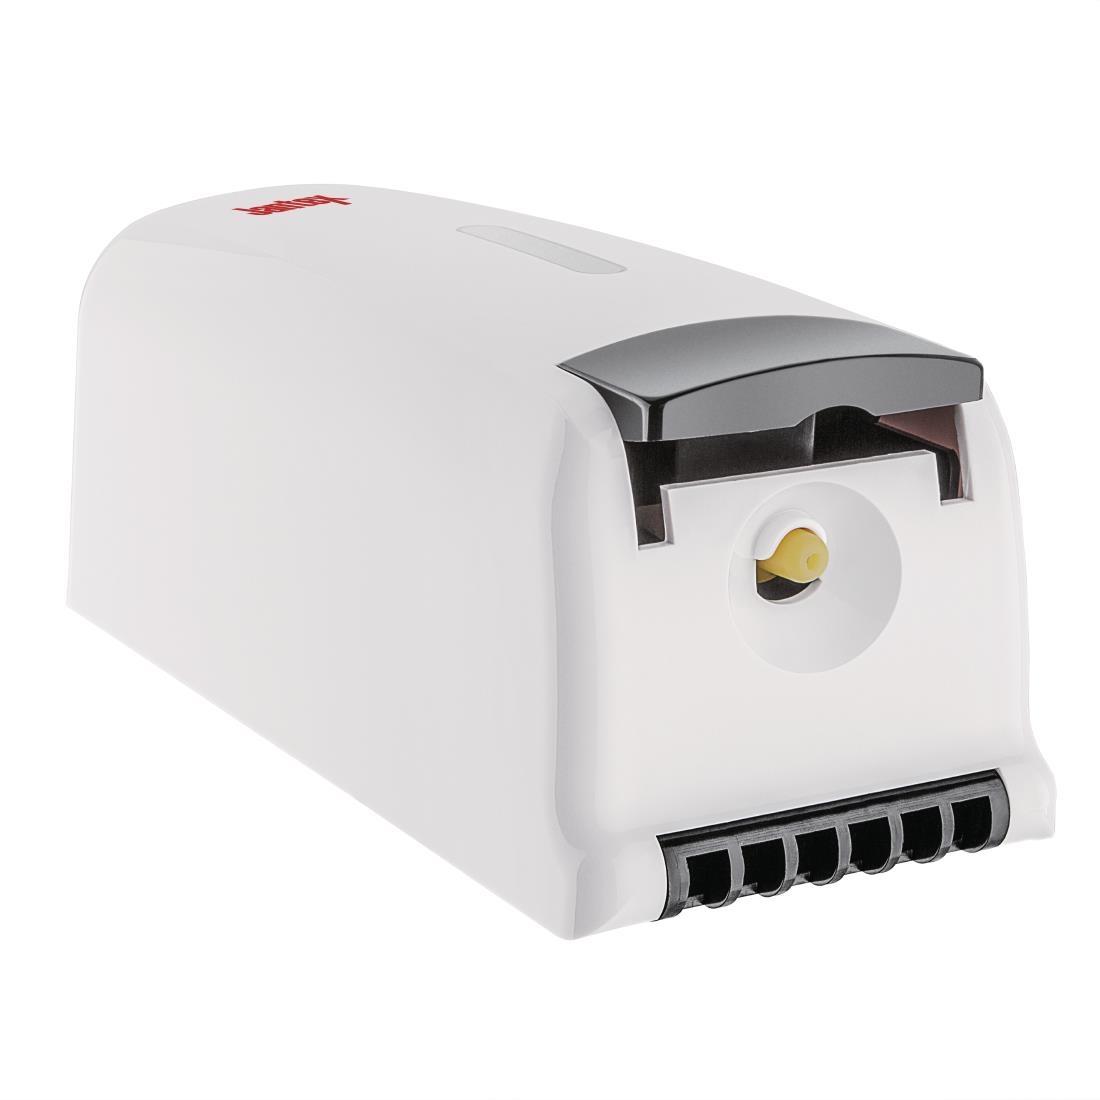 Jantex Liquid Soap and Hand Sanitiser Dispenser 1Ltr - FK385  - 3